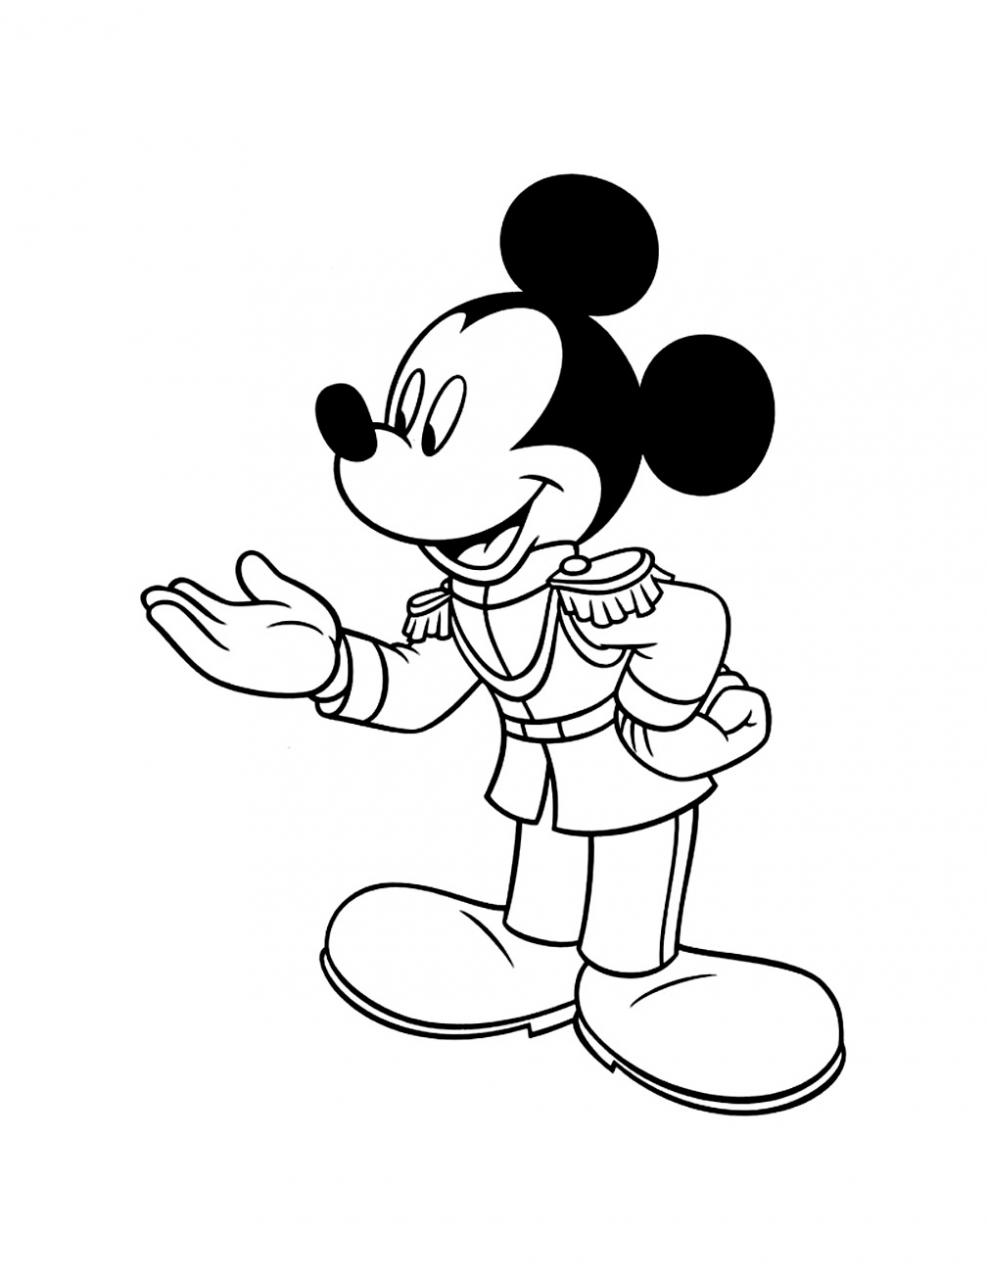 Tranh tô màu chuột Mickey đáng yêu 34 - Tổng hợp tranh tô màu chuột Mickey đáng yêu cực đẹp